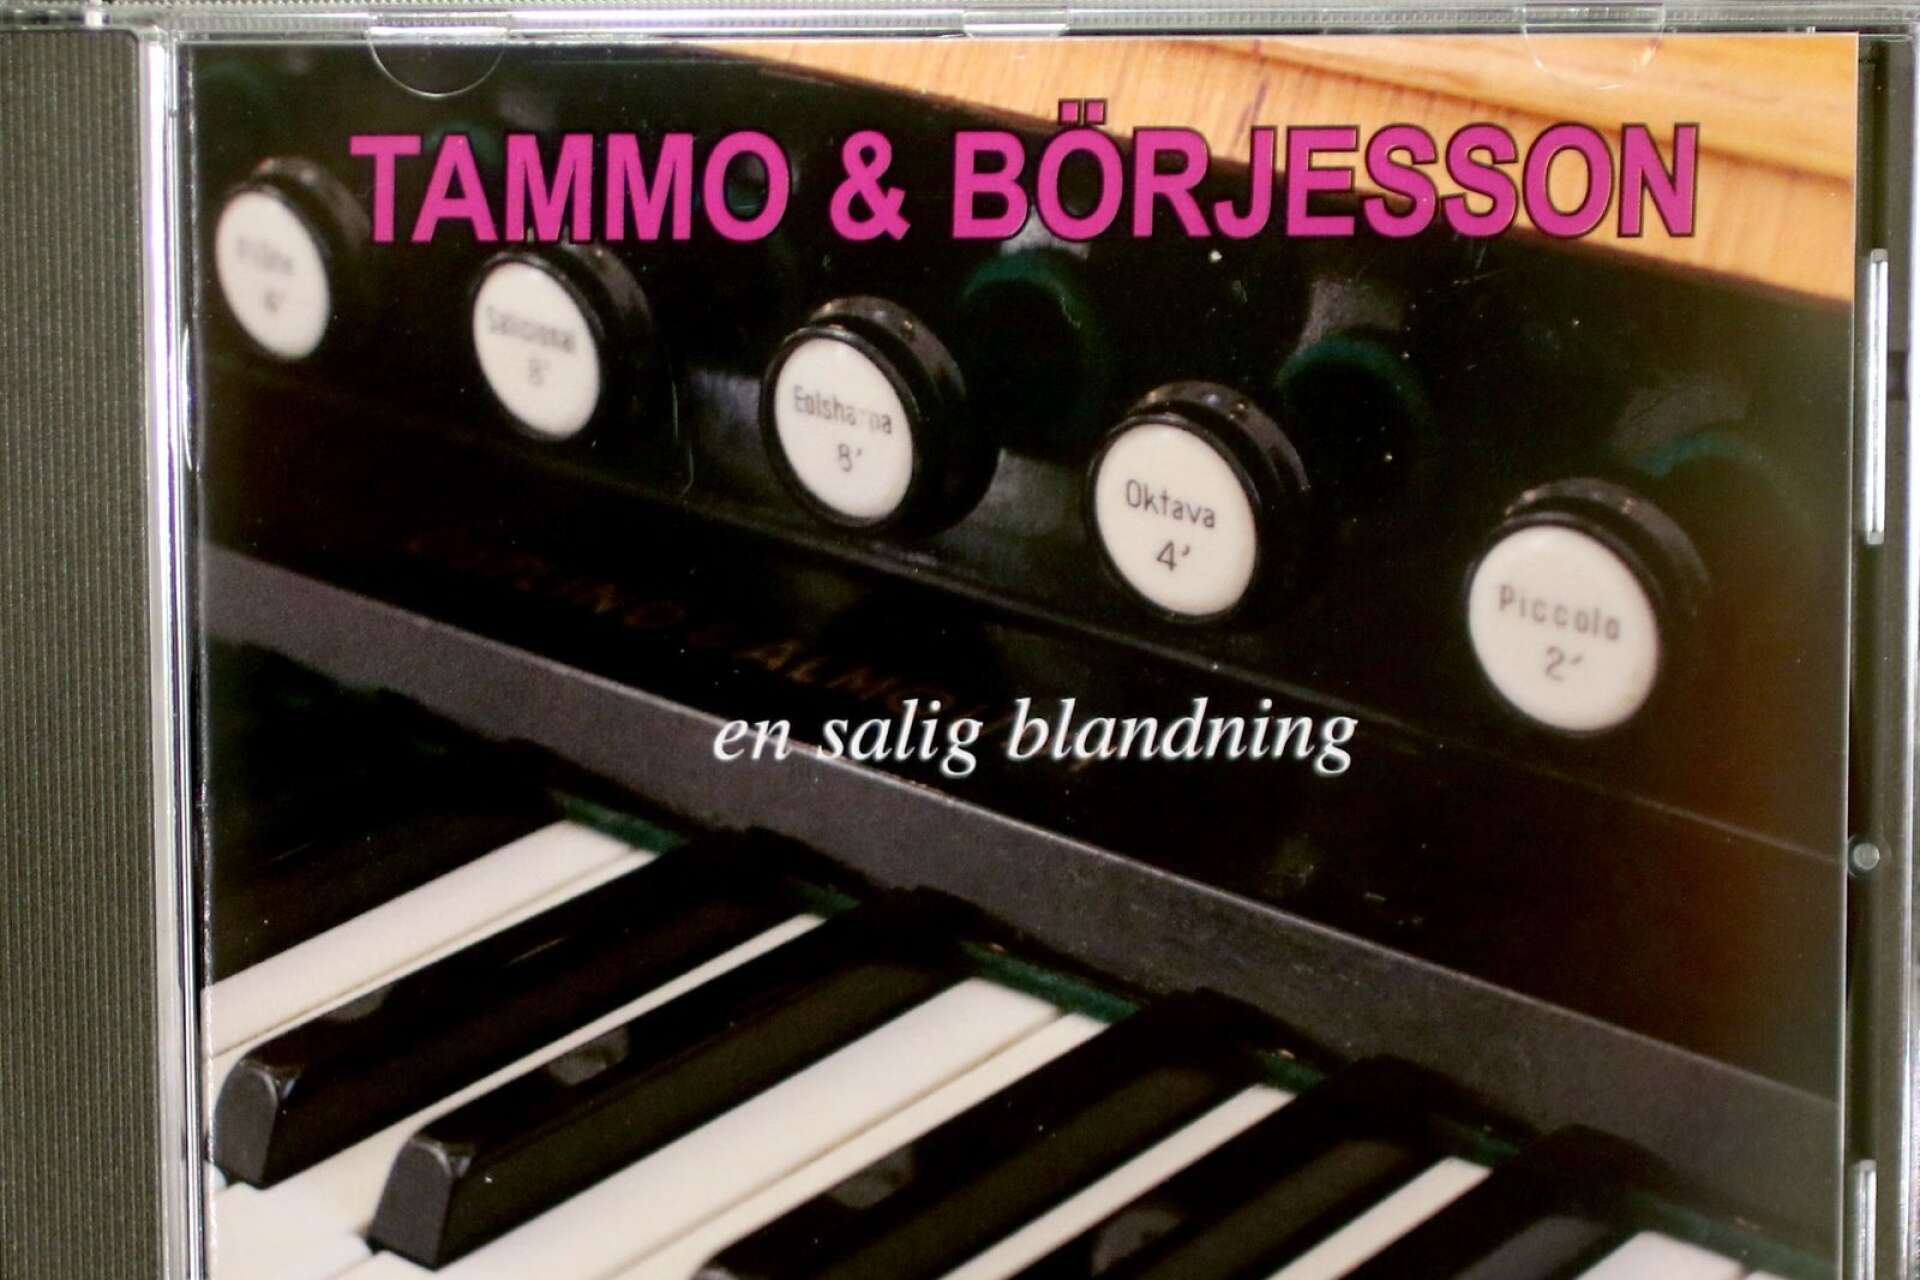 Jan Tammo och Anders Börjesson har skapat en salig blandning på cd.